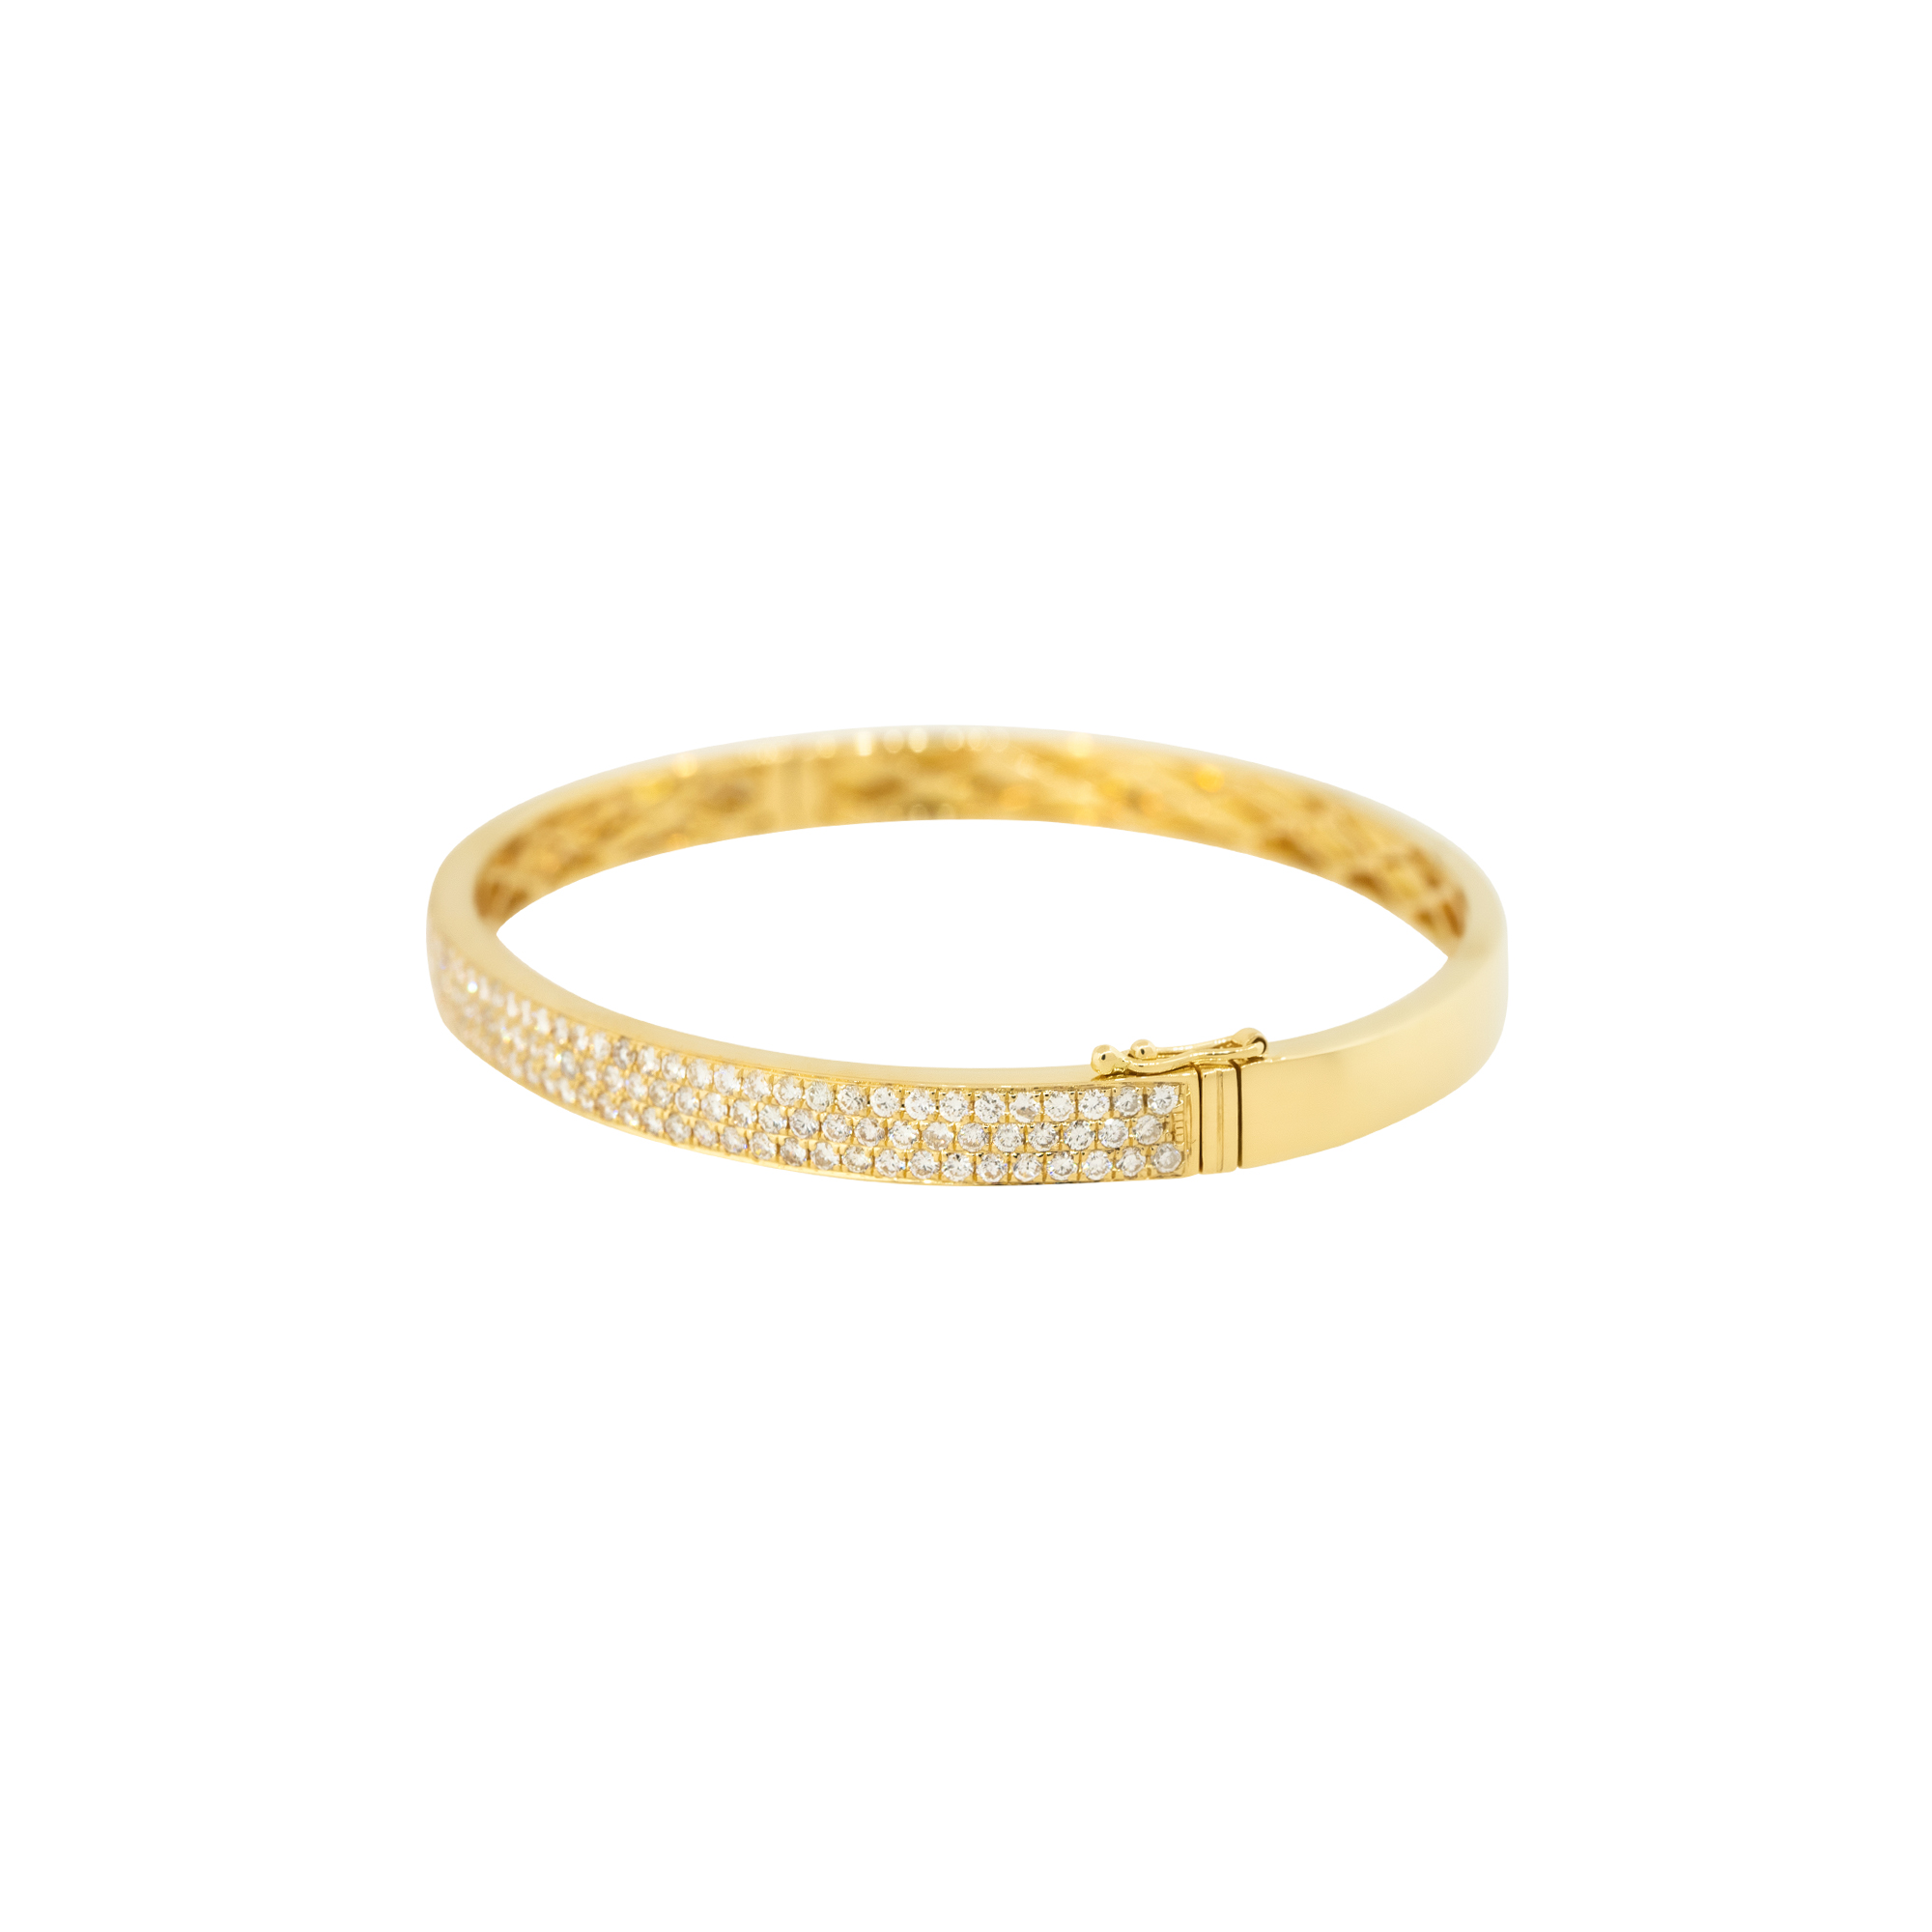 ODELIA Diamond Pave Bangle Bracelet in 18K White Gold